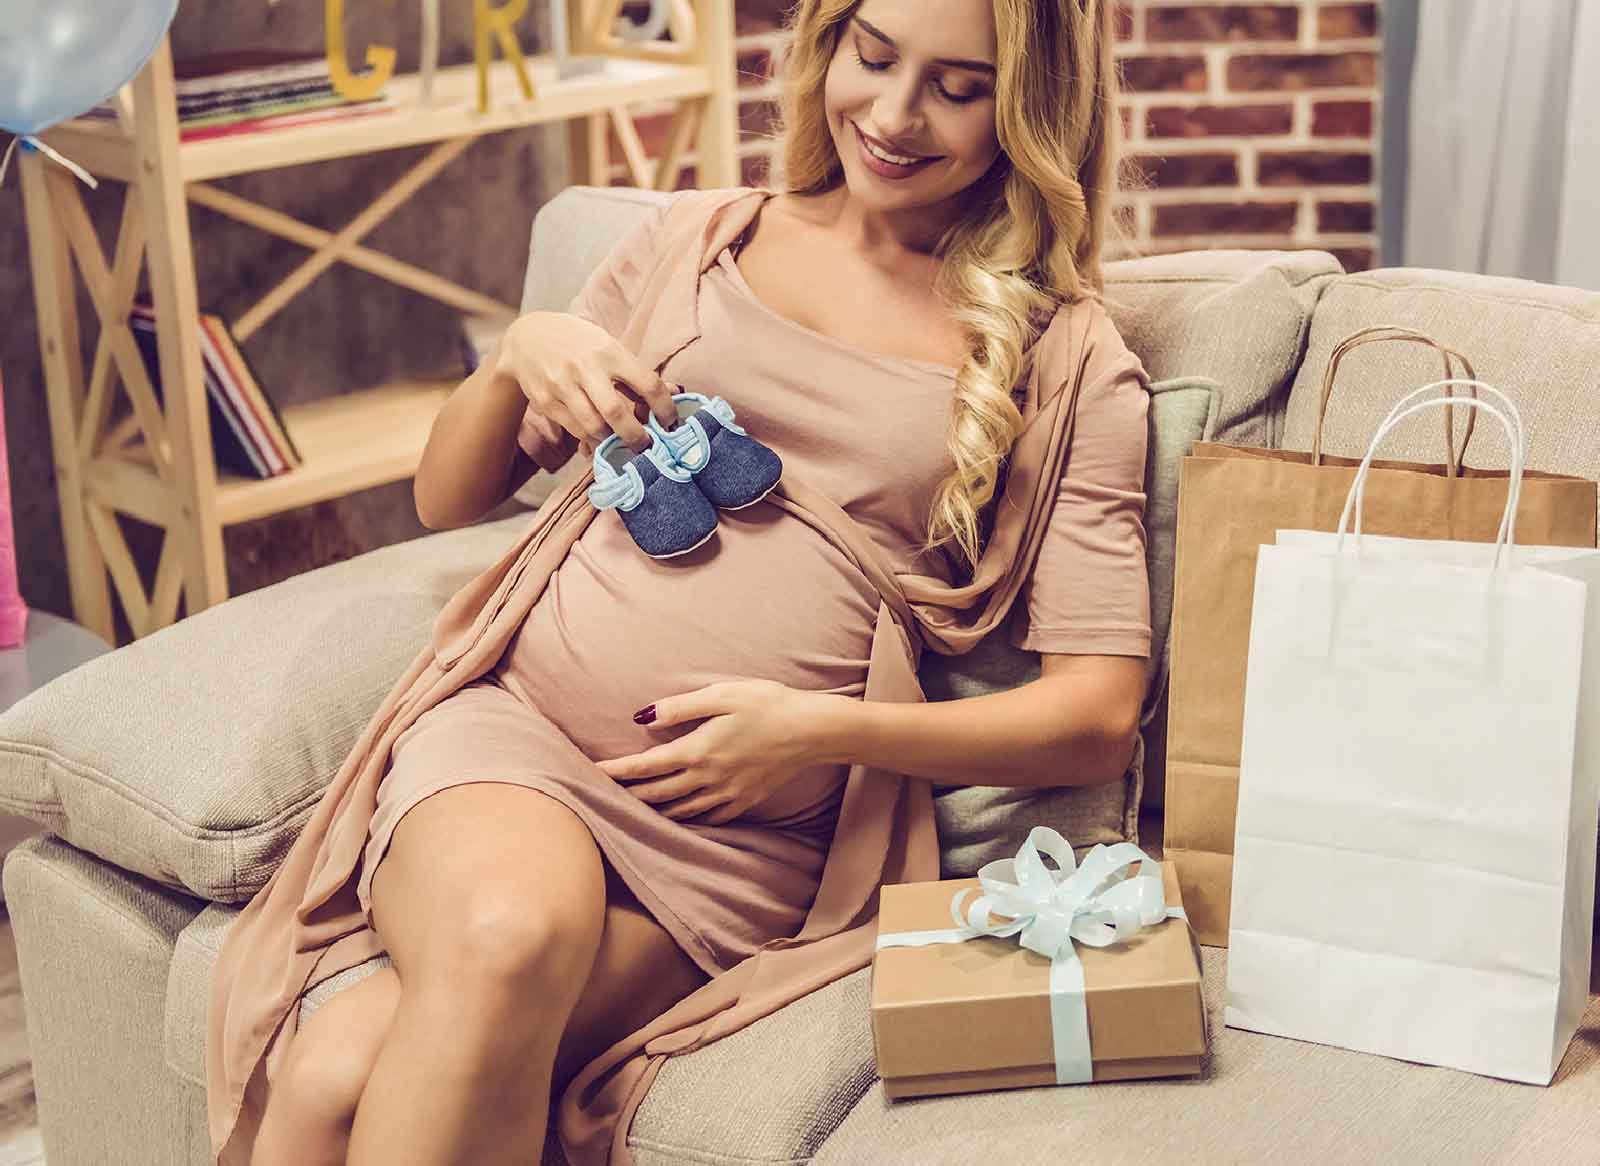 Femme enceinte : les meilleures idées cadeaux